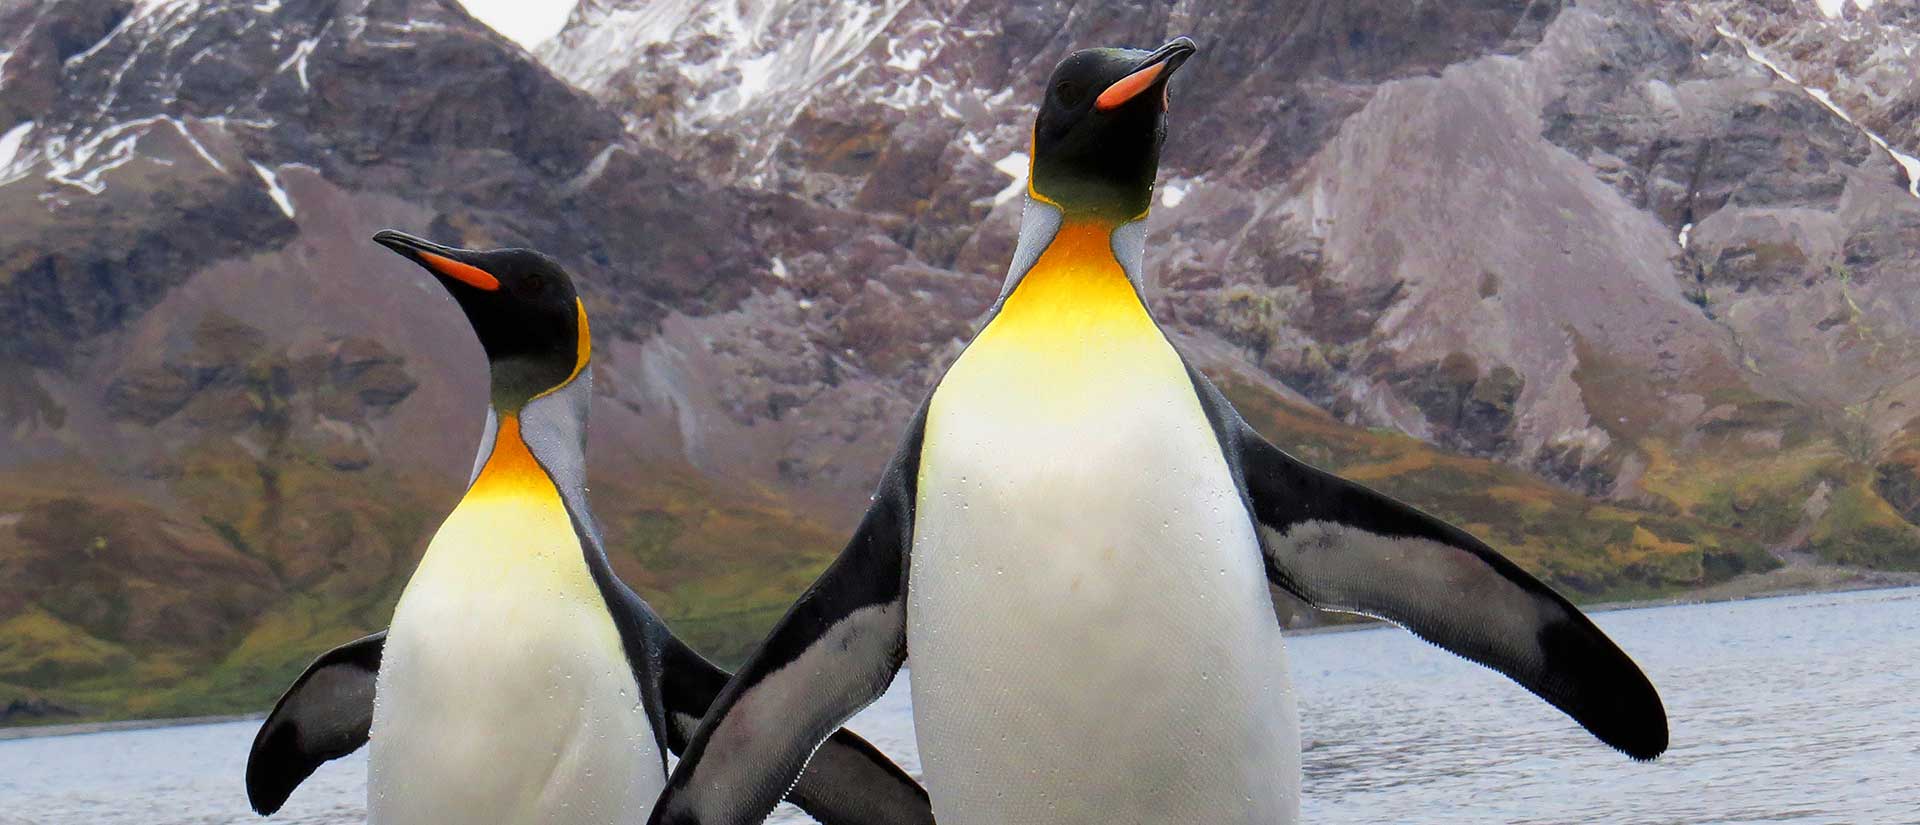 שייט מקיף לאנטארקטיקה - 21 יום - מסע צילום וטבע אל איי פוקלנד, ג׳ורג׳יה הדרומית ואנטארקטיקה